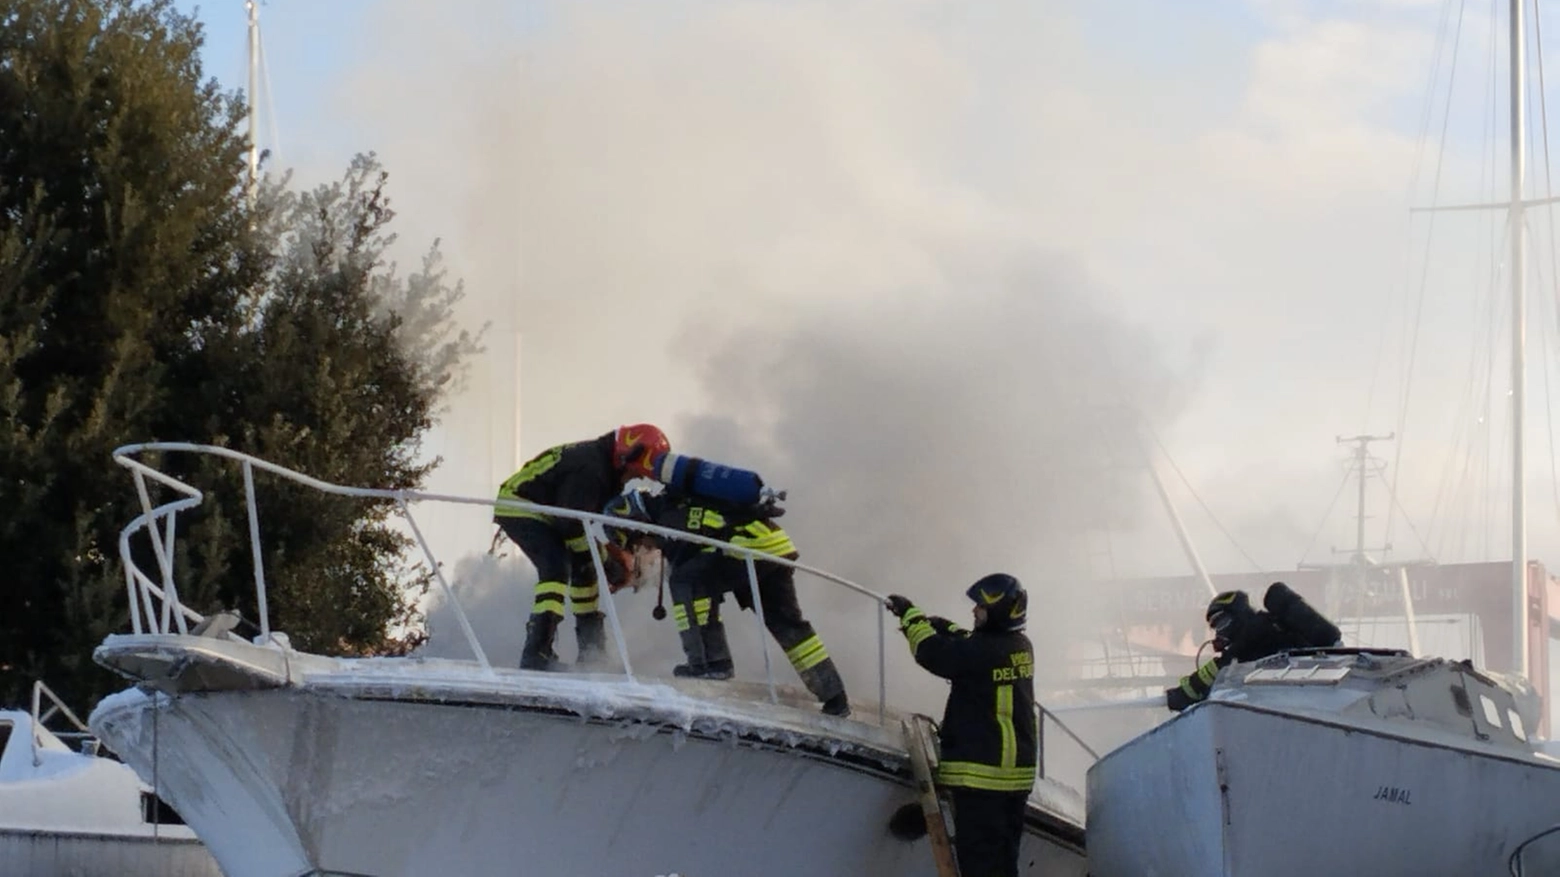 Allarme al porto di Civitanova, sul posto sono intervenuti subito i vigili dle fuoco che hanno spento il rogo